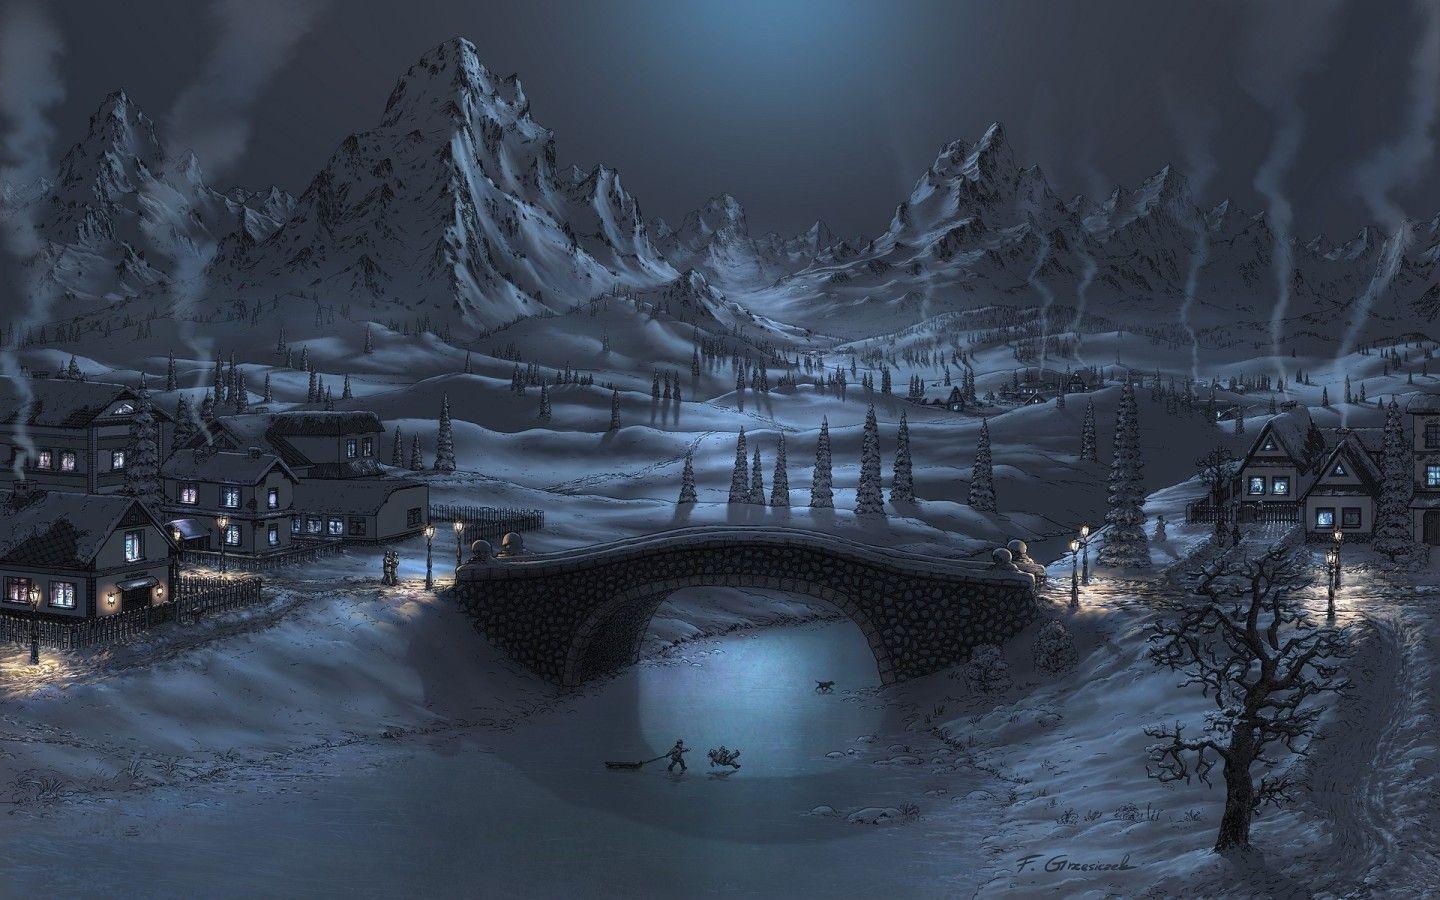 Digital Winter Landscape widescreen wallpaper. Wide